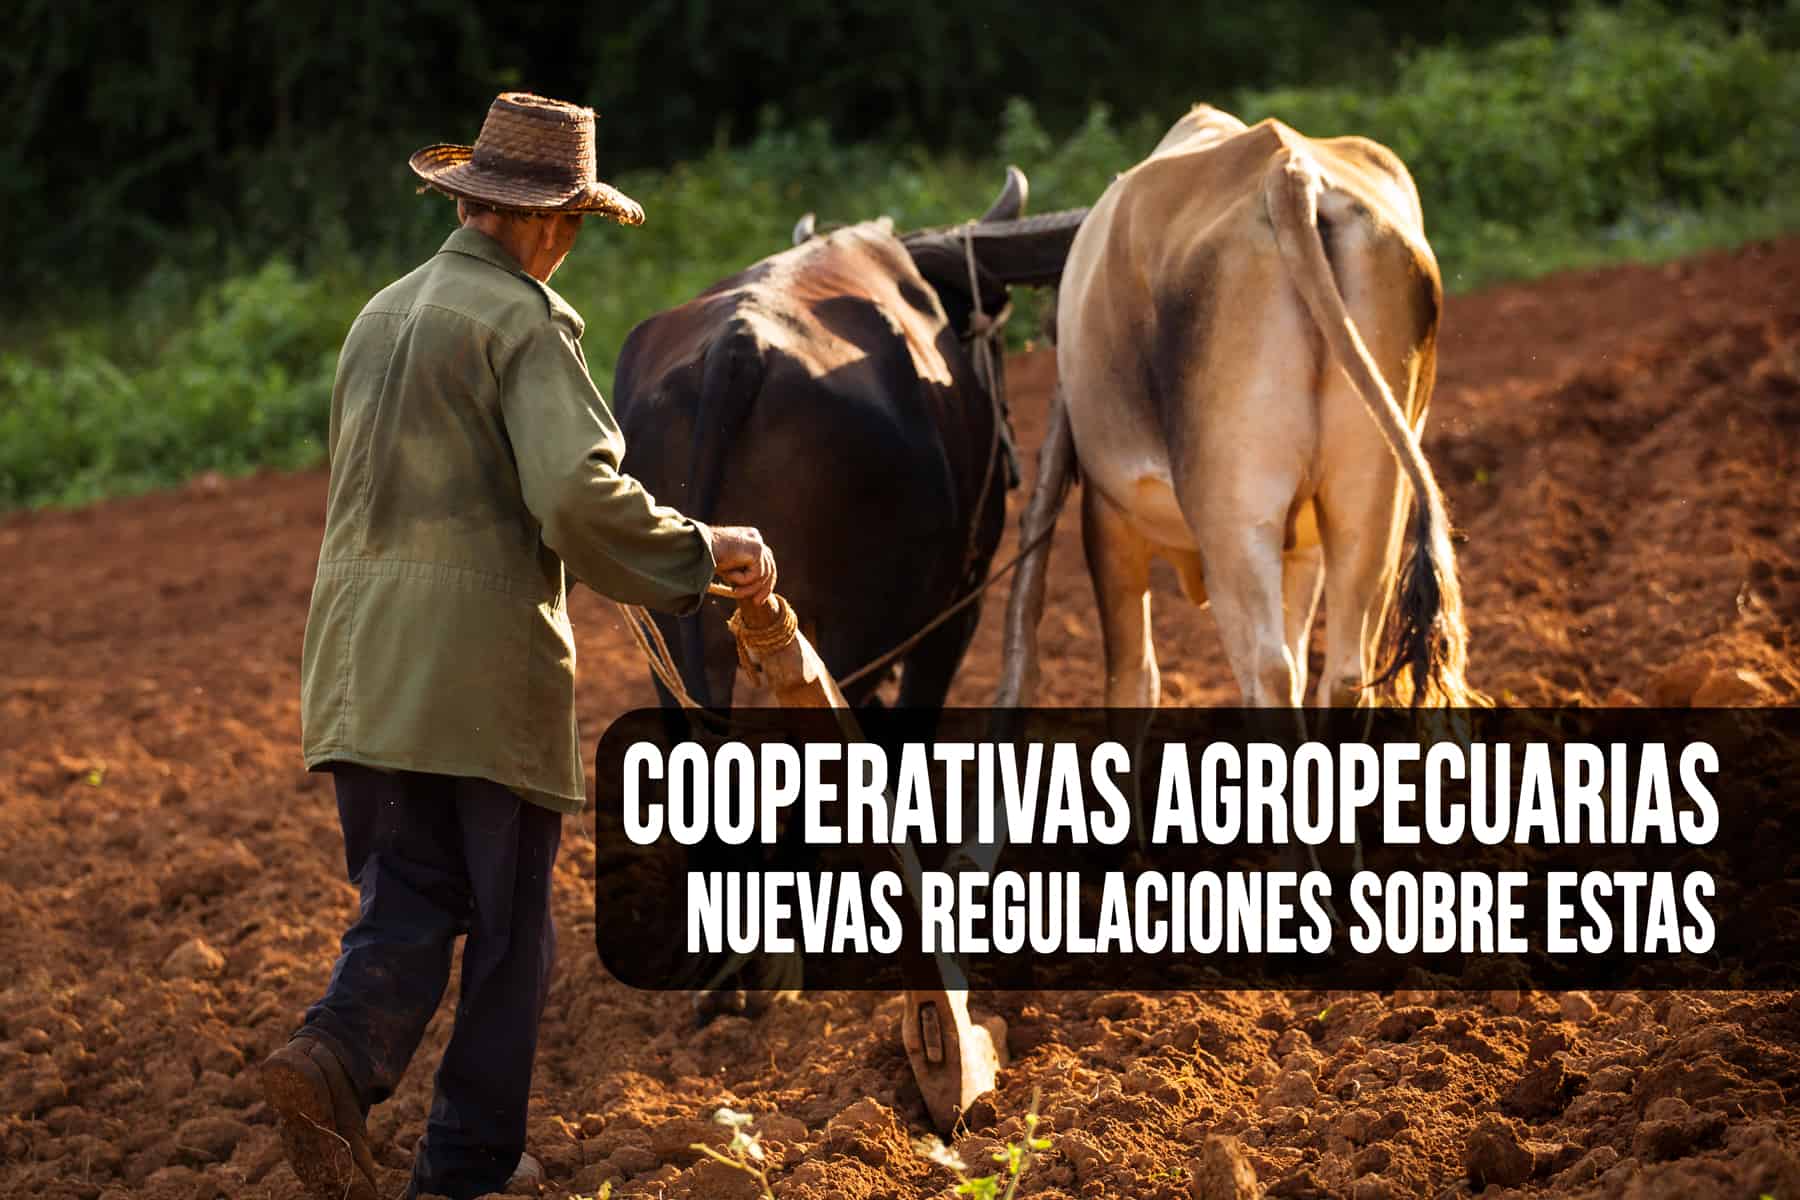 ¿Qué dice el Nuevo Decreto sobre Cooperativas Agropecuarias en Cuba?